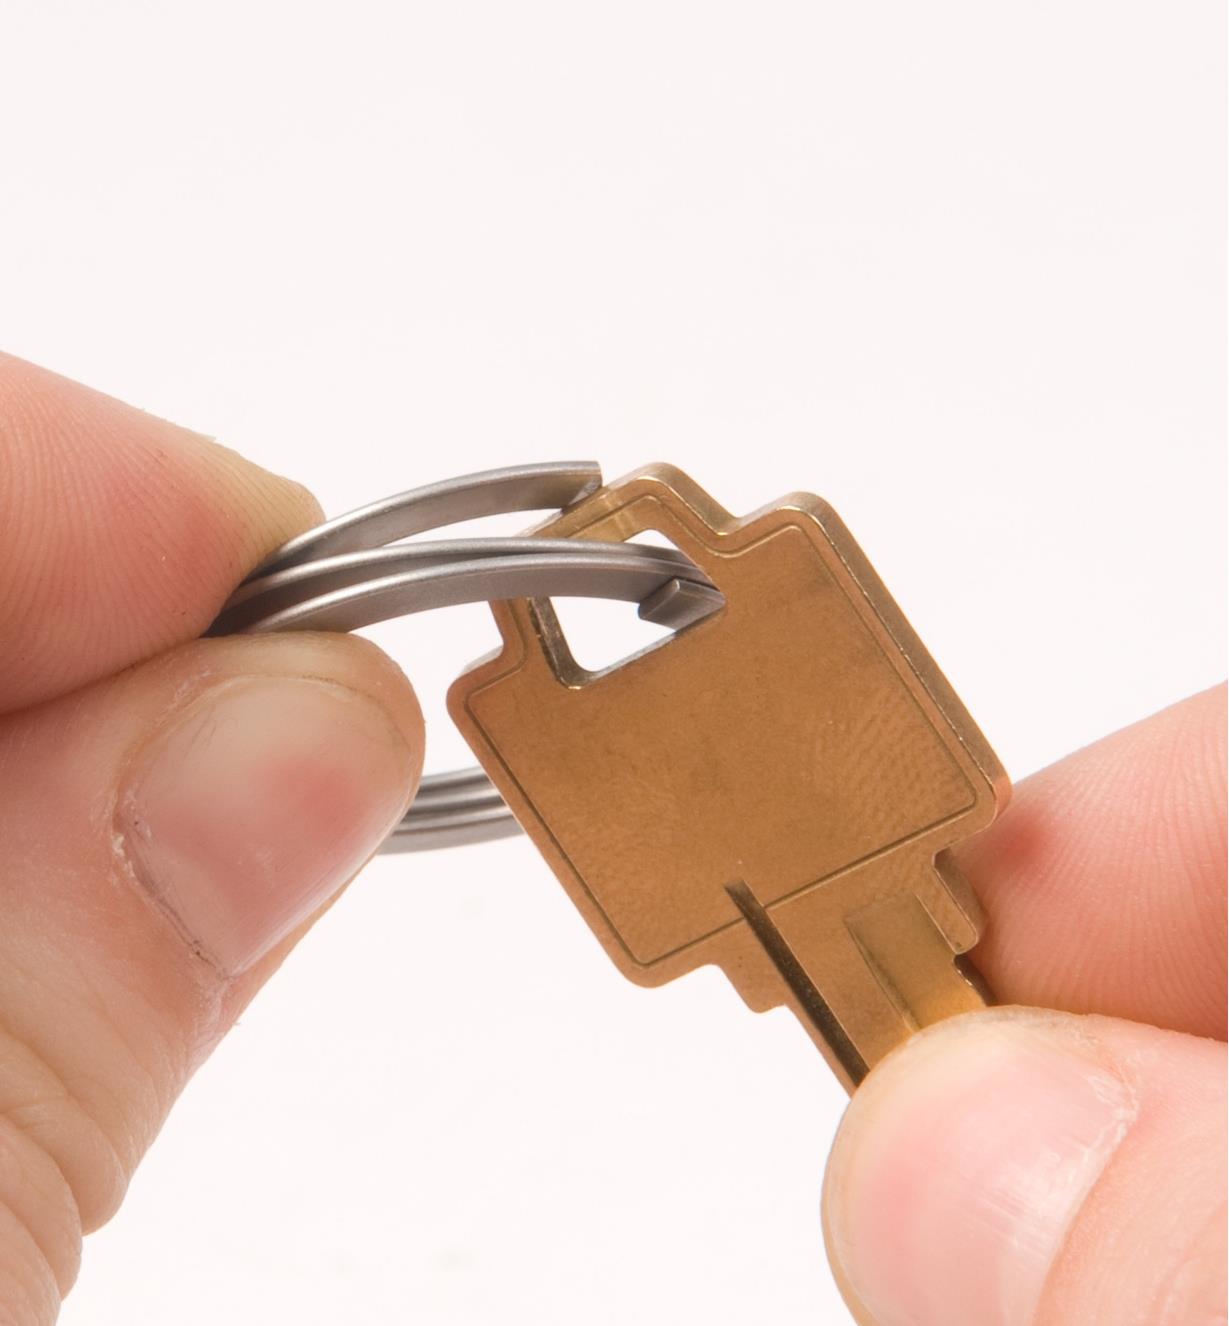 Porte-clés FreeKey comportant une clé